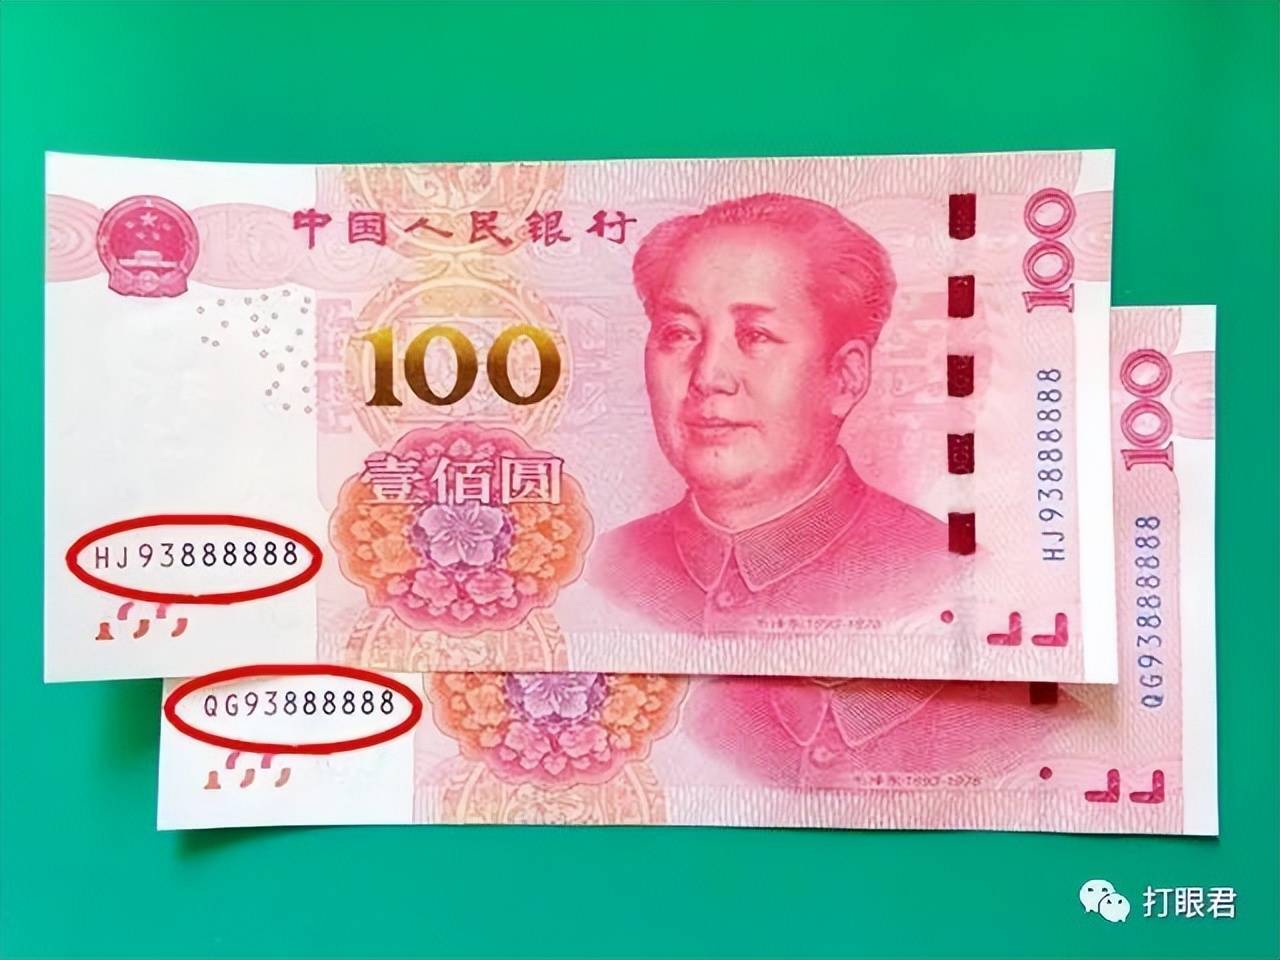 目前流通的100元纸币属于第五套人民币,这一系列的100元纸币分别在